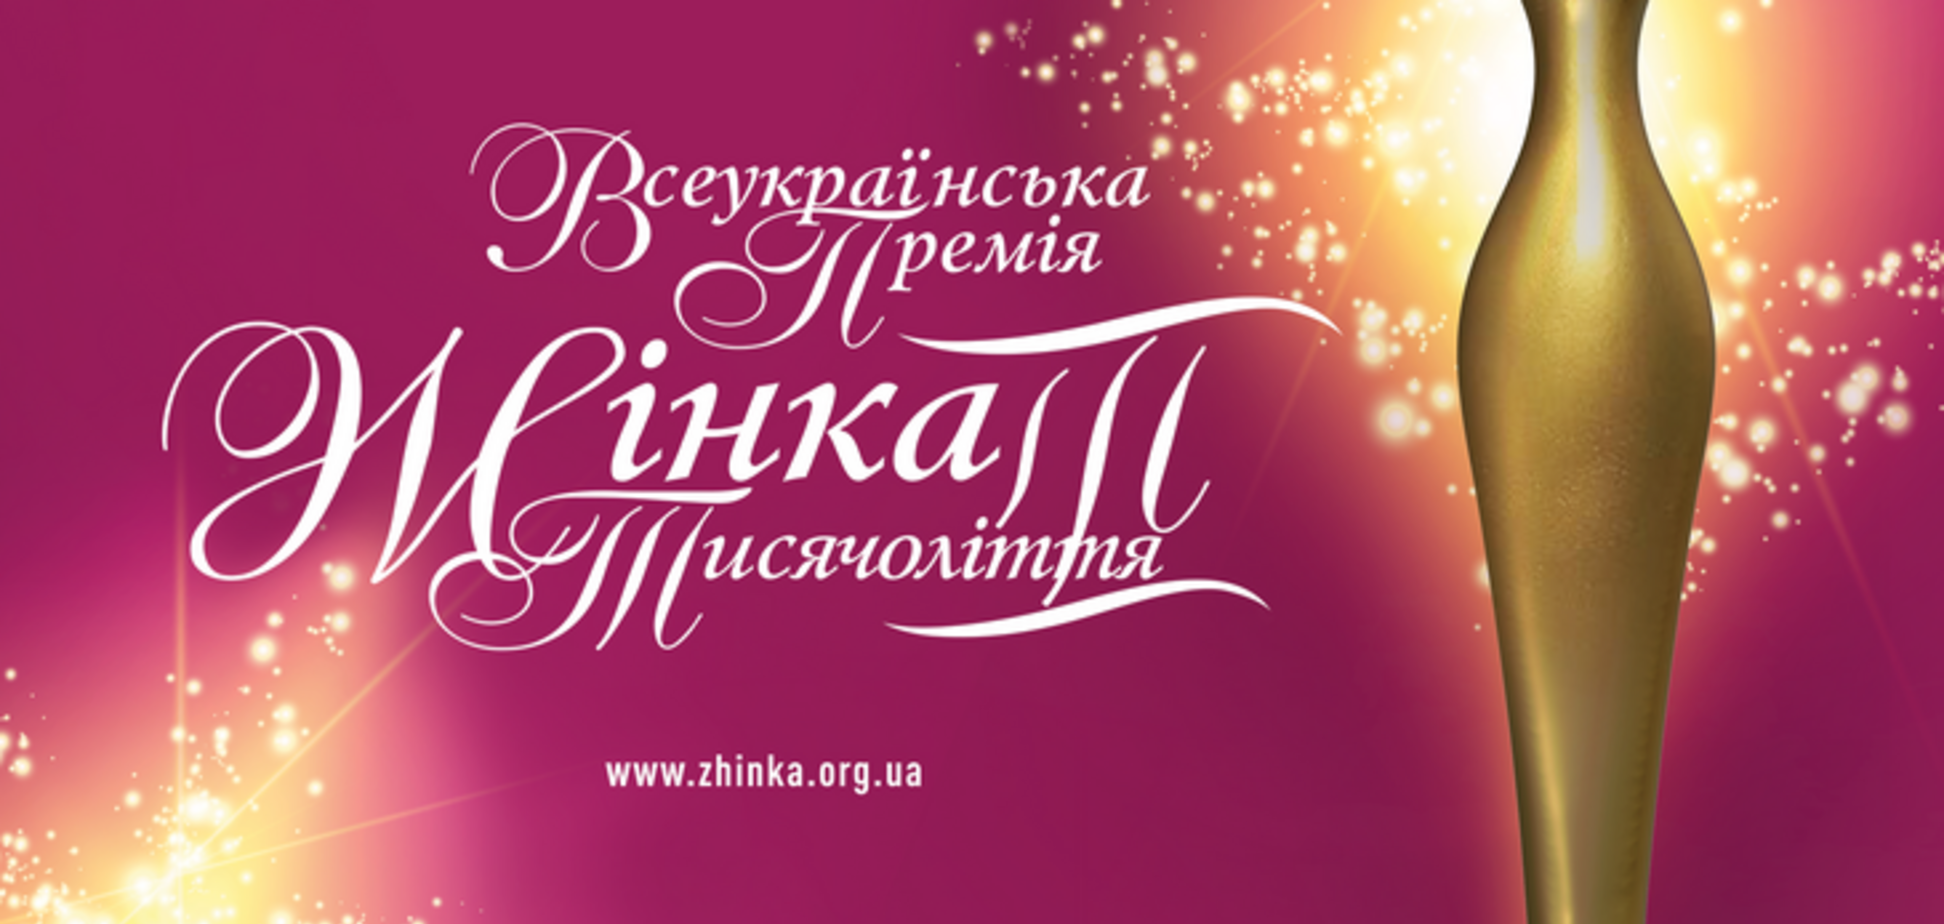 В Киеве состоится двенадцатая официальная церемония награждения Всеукраинской премии 'Женщина III тысячелетия'